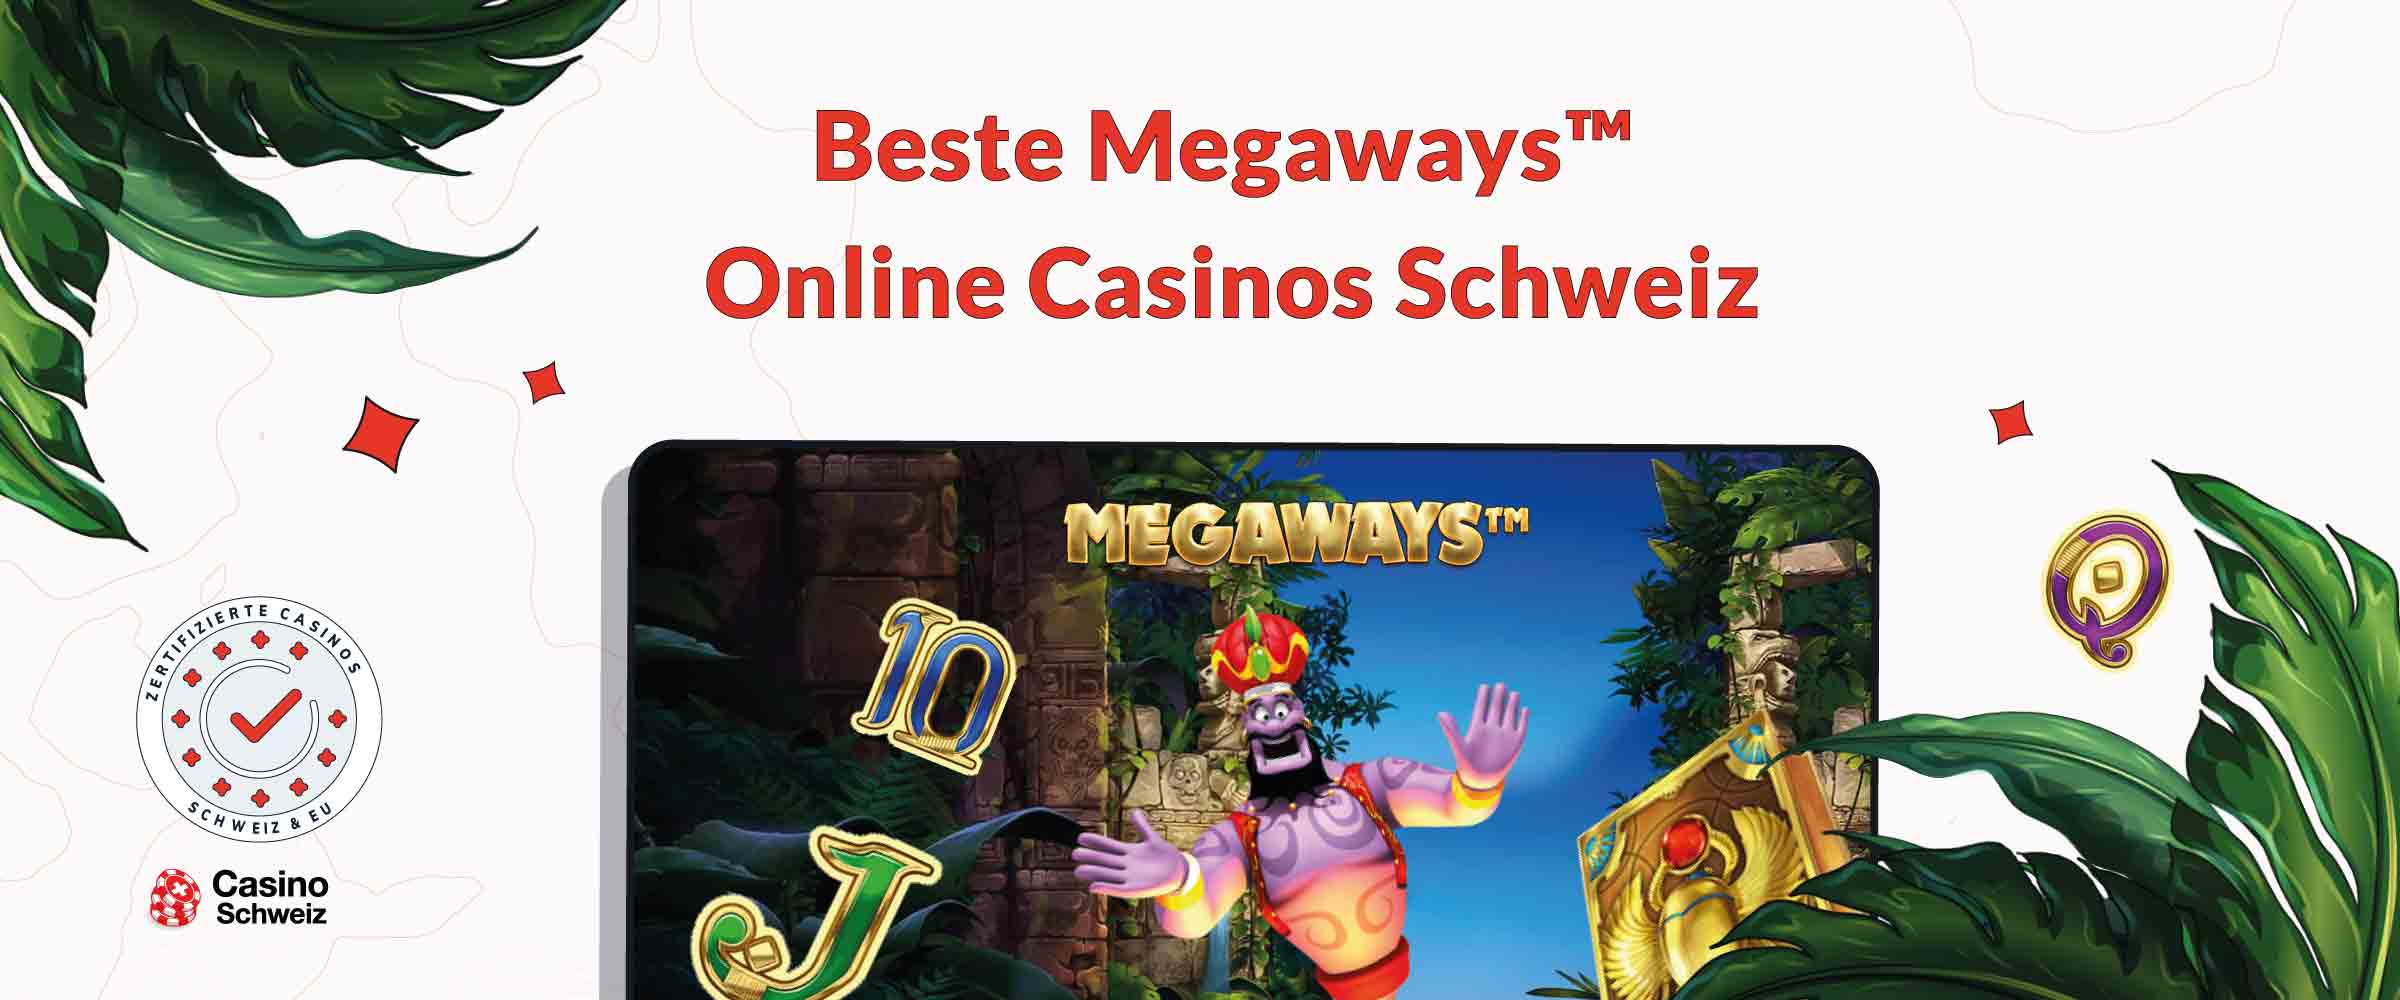 Megaways Online Casinos Schweiz 